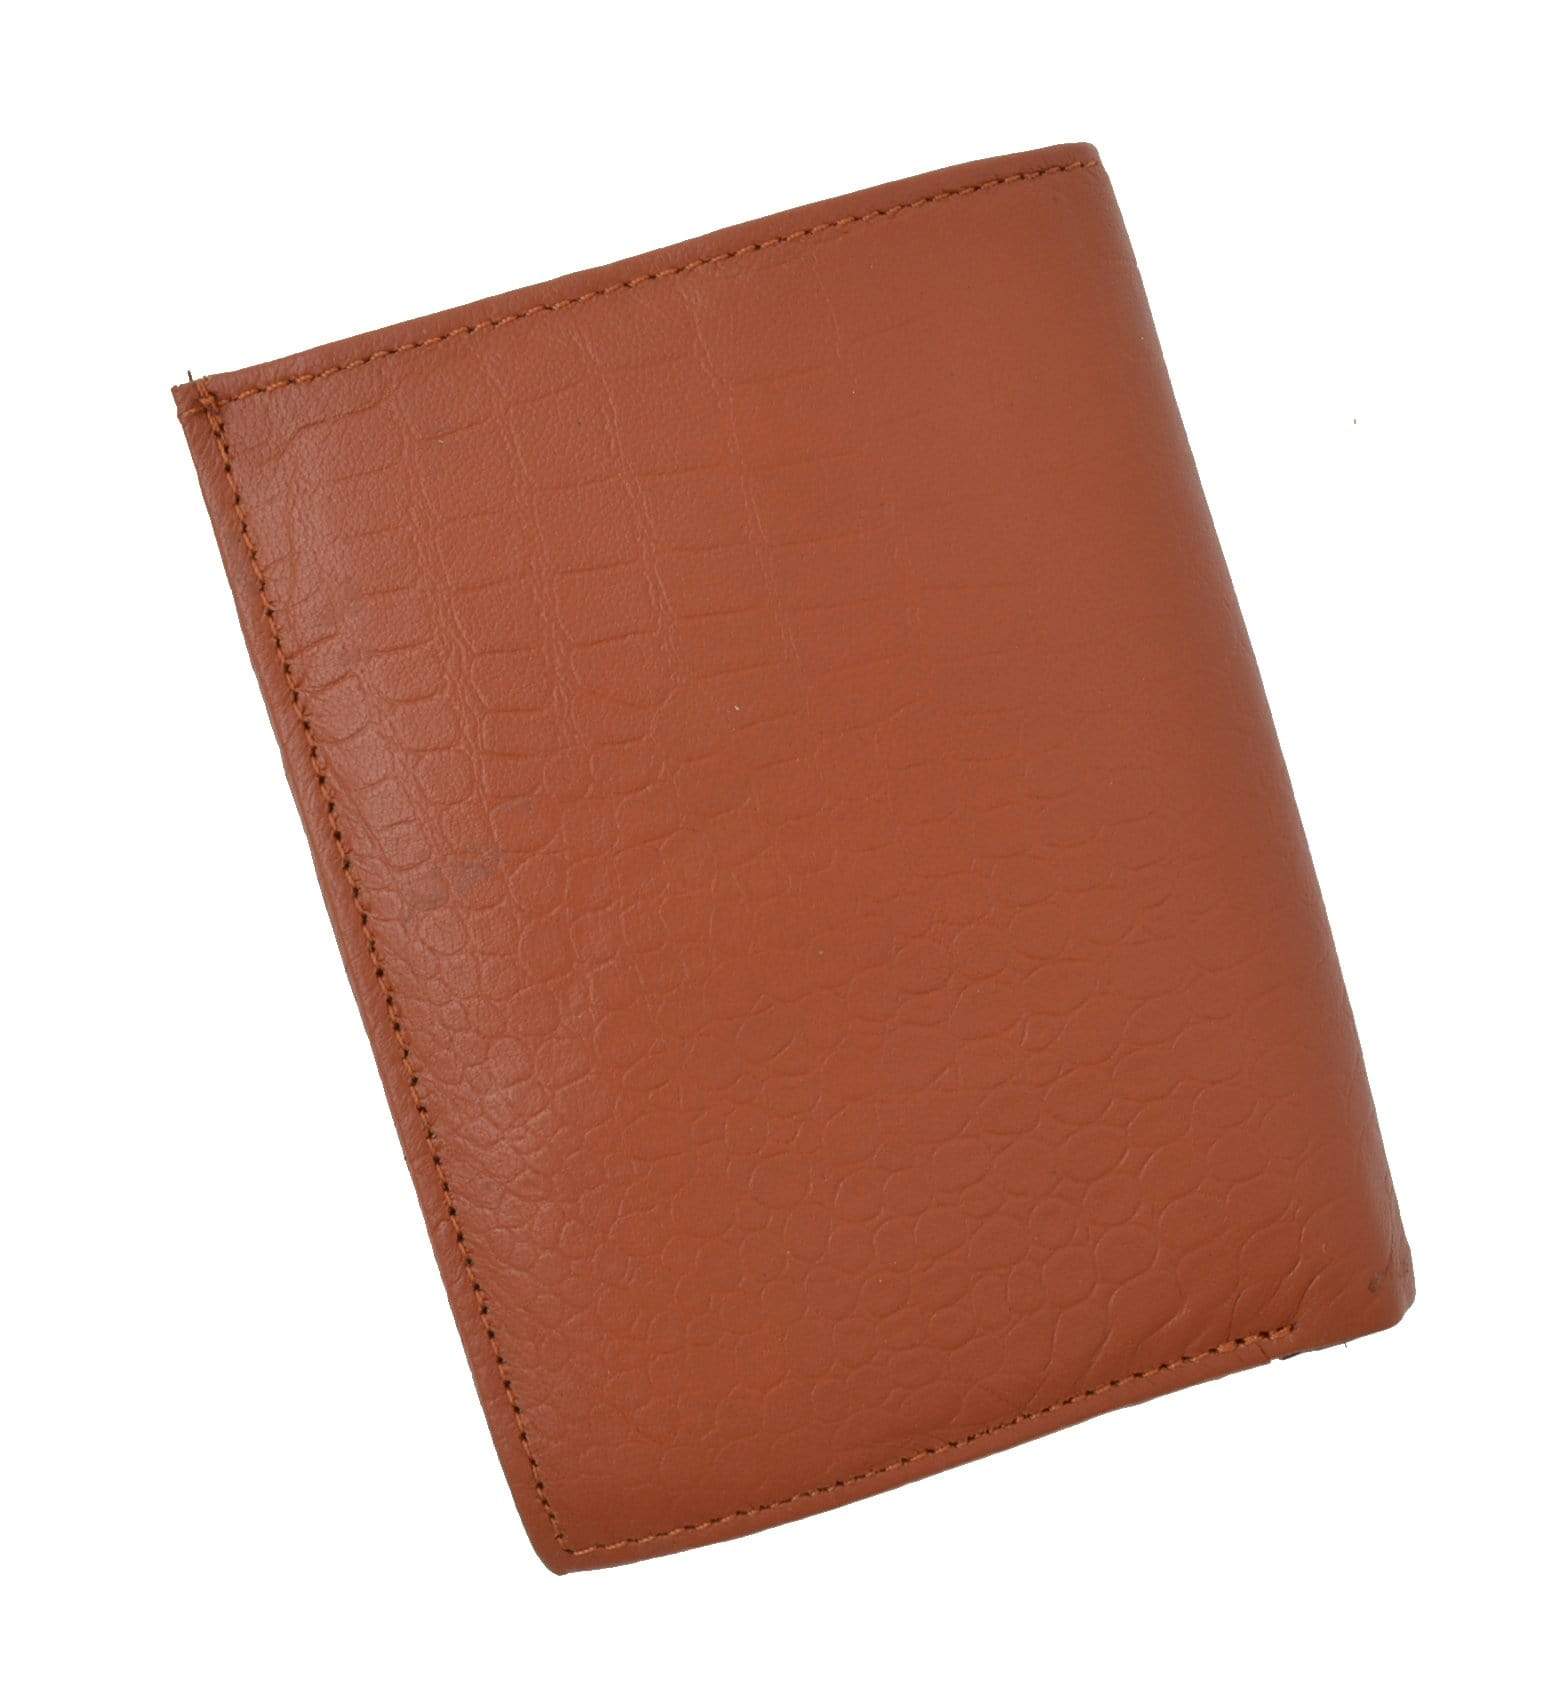 Striped Luxury Men Wallet, Tb Leather Wallet